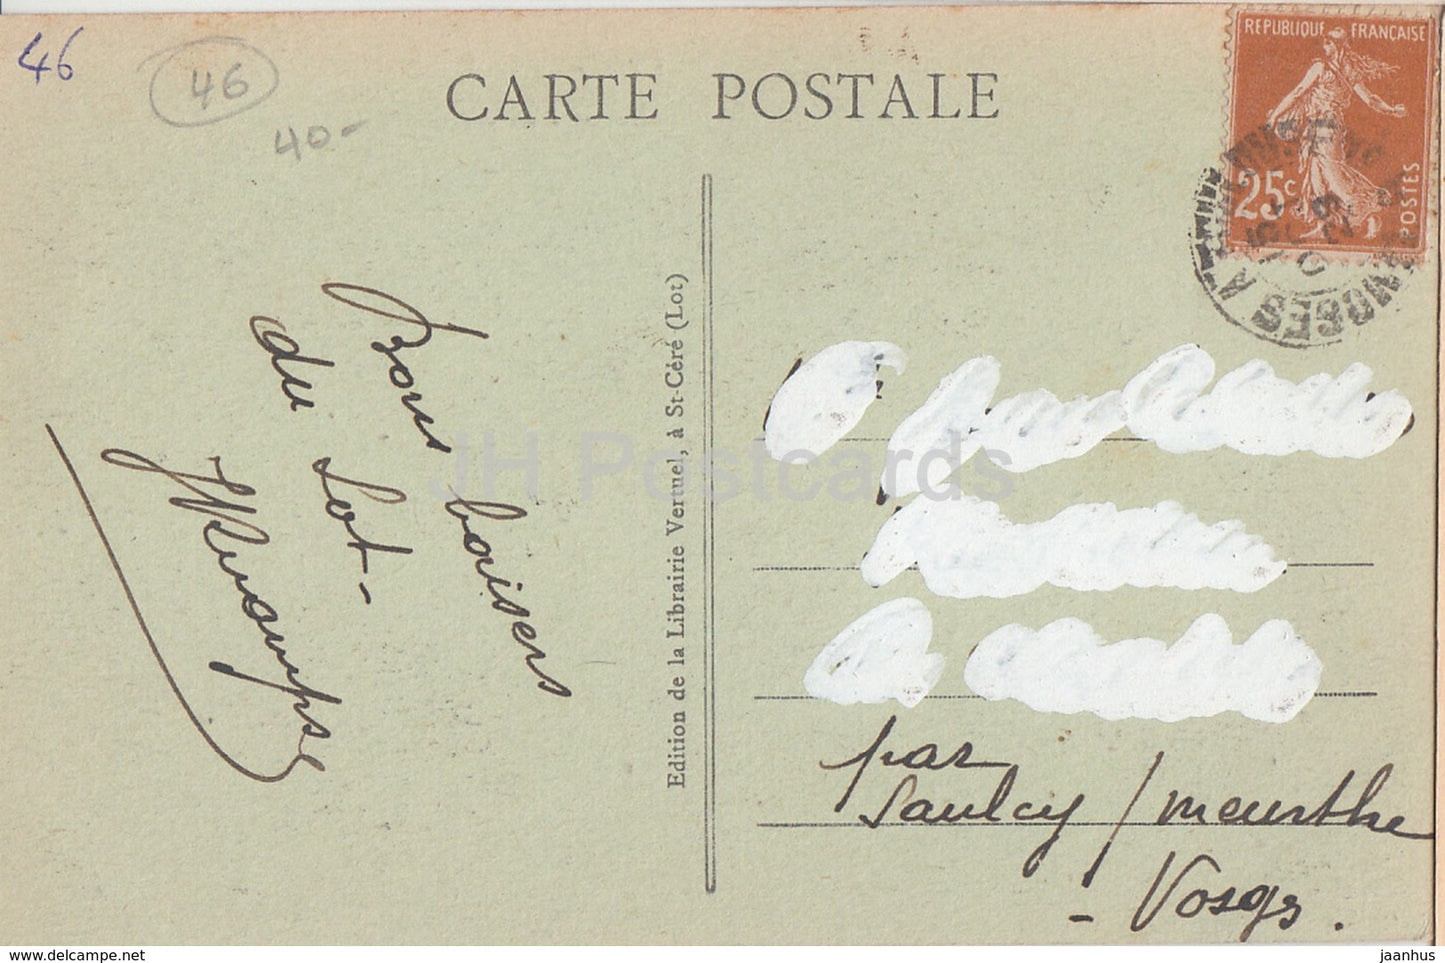 Le Château d'Assier - Portrait et Signature de Galiot de Genouillac - château - 683 - carte postale ancienne - 1929 - France - utilisé